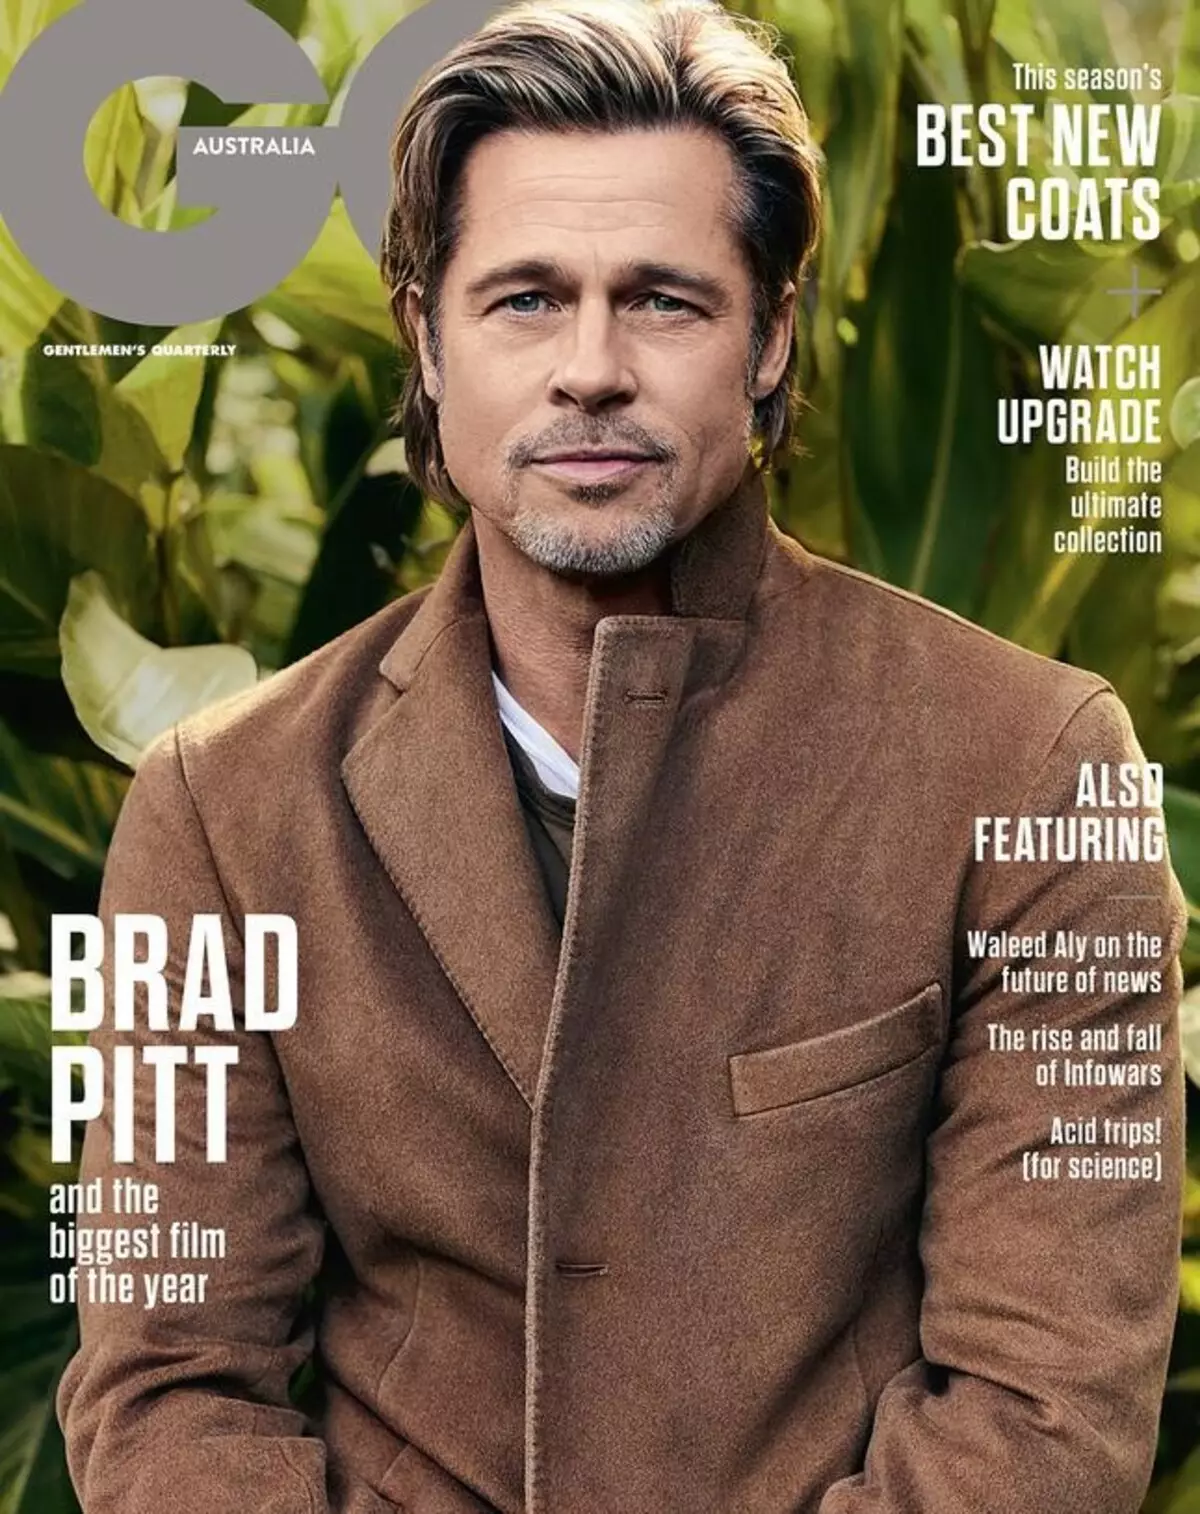 លោក Brad Pitt អាយុ 55 ឆ្នាំនៅក្នុងវគ្គរូបថតសម្រាប់ GQ: 